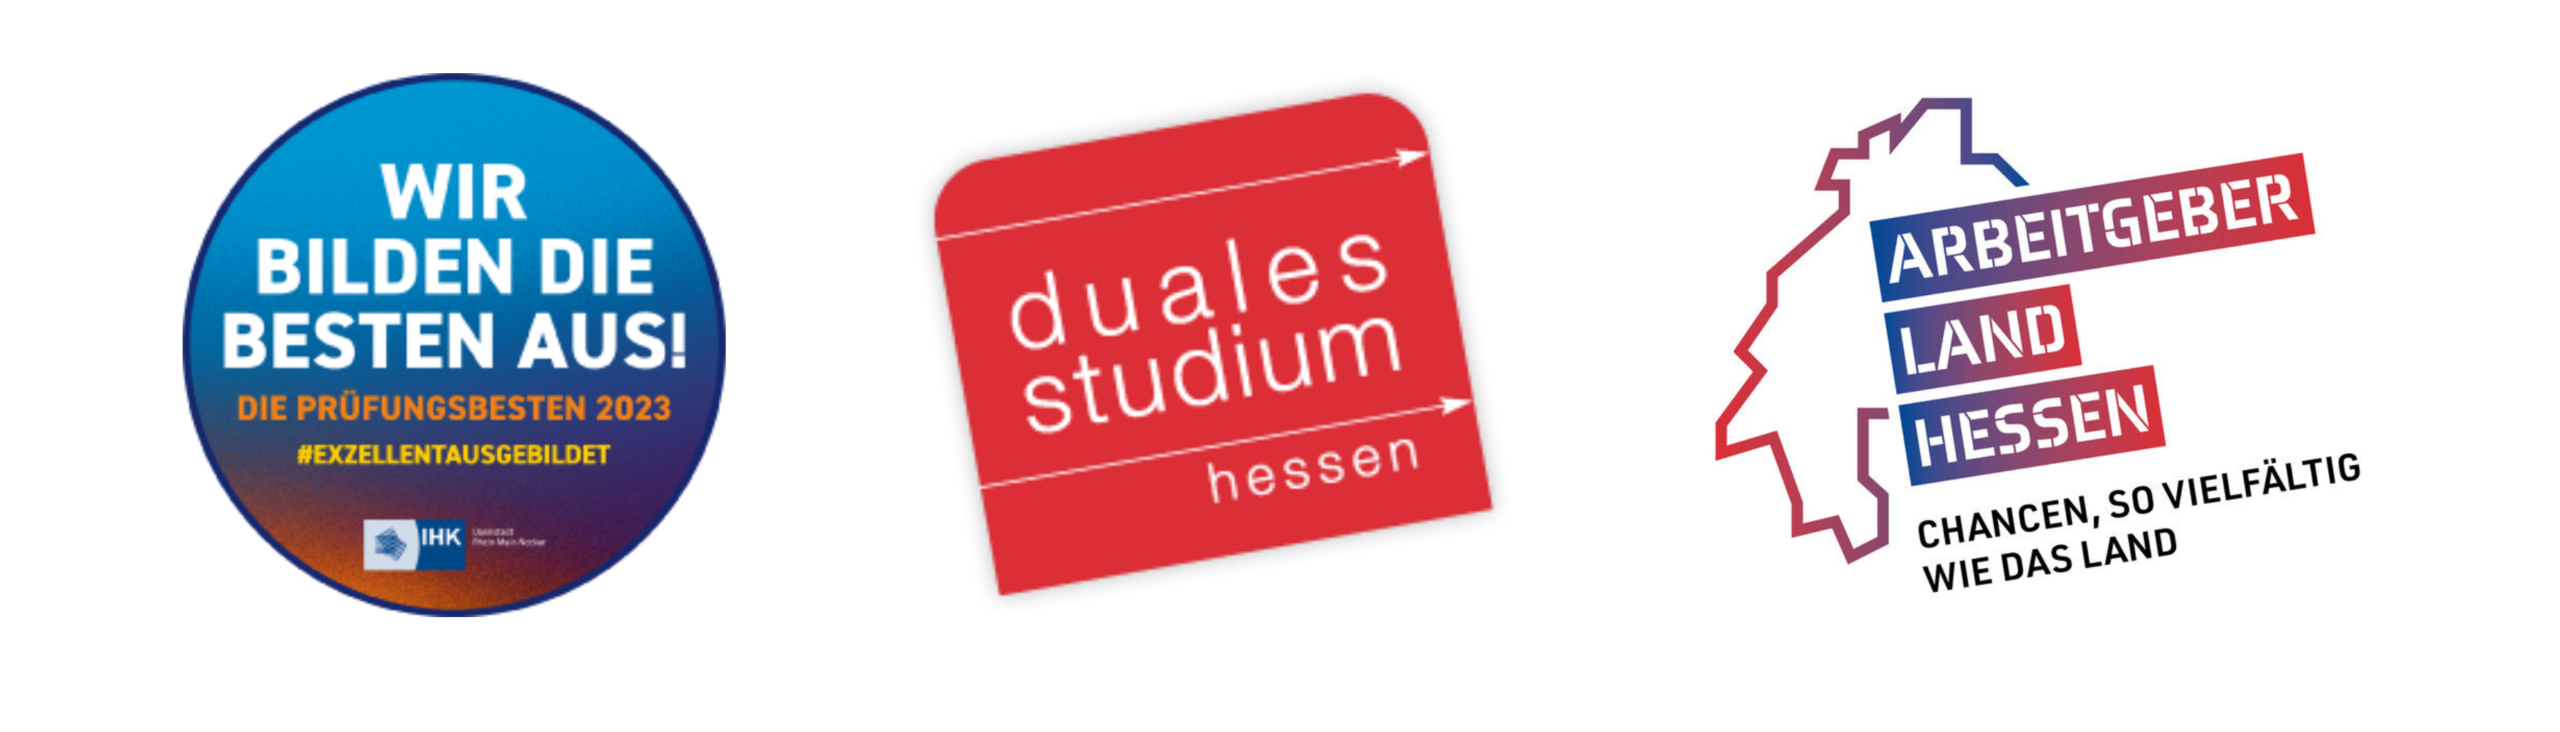 Logo des Dualen Studiums Hessen sowie des Arbeitgebers Land Hessen